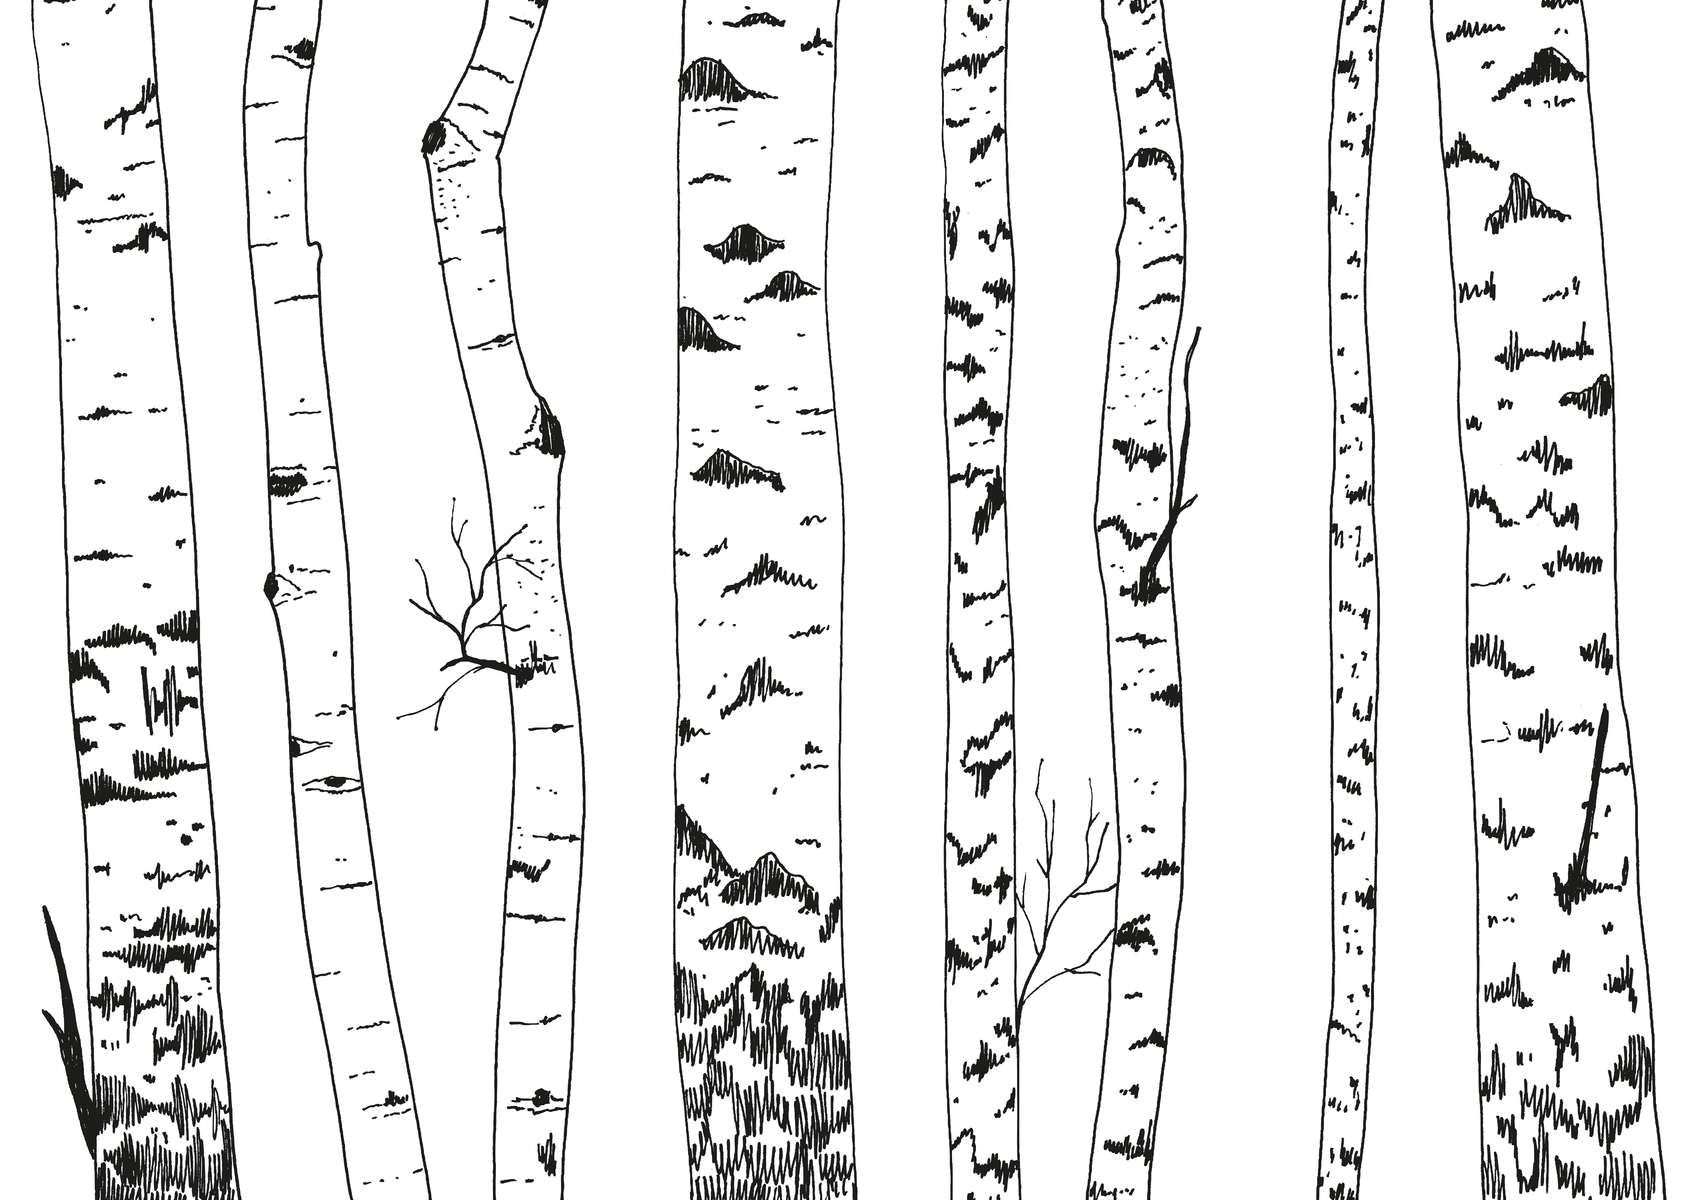             papiers peints à impression numérique forêt de bouleaux dessinée - intissé lisse & mat
        